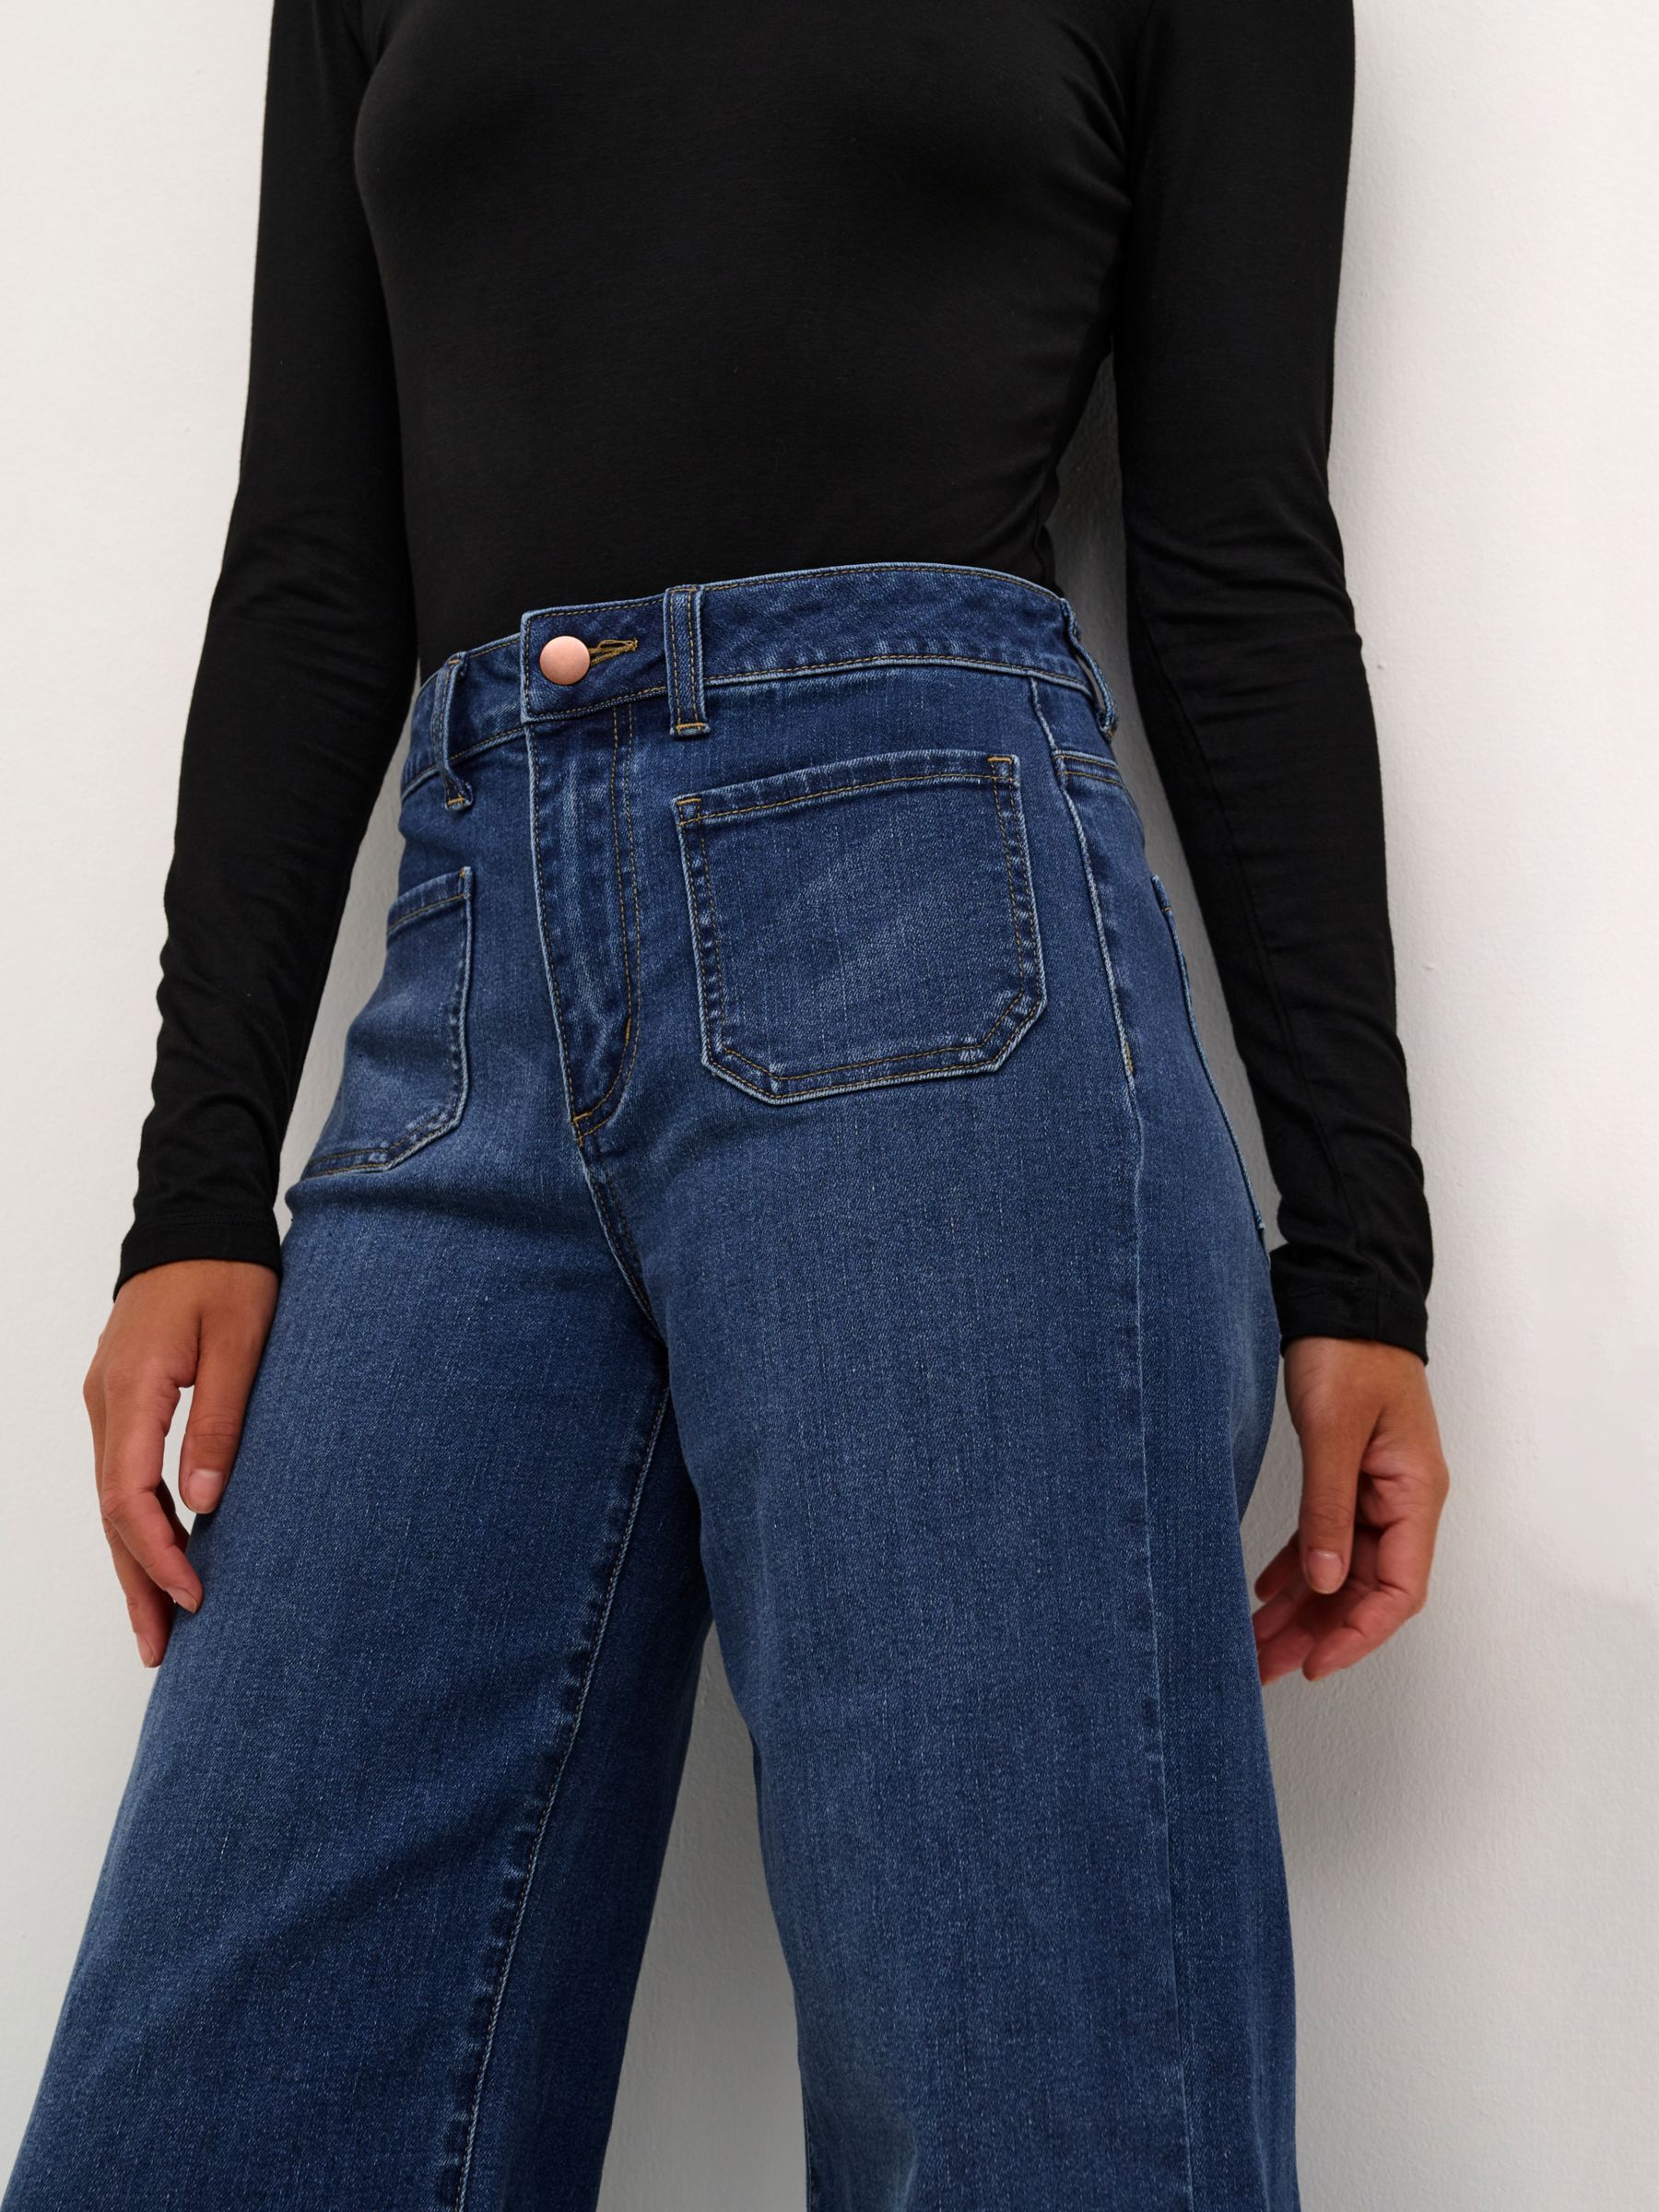 KAFFE Karla Flared Jeans, Medium Blue Denim, 8